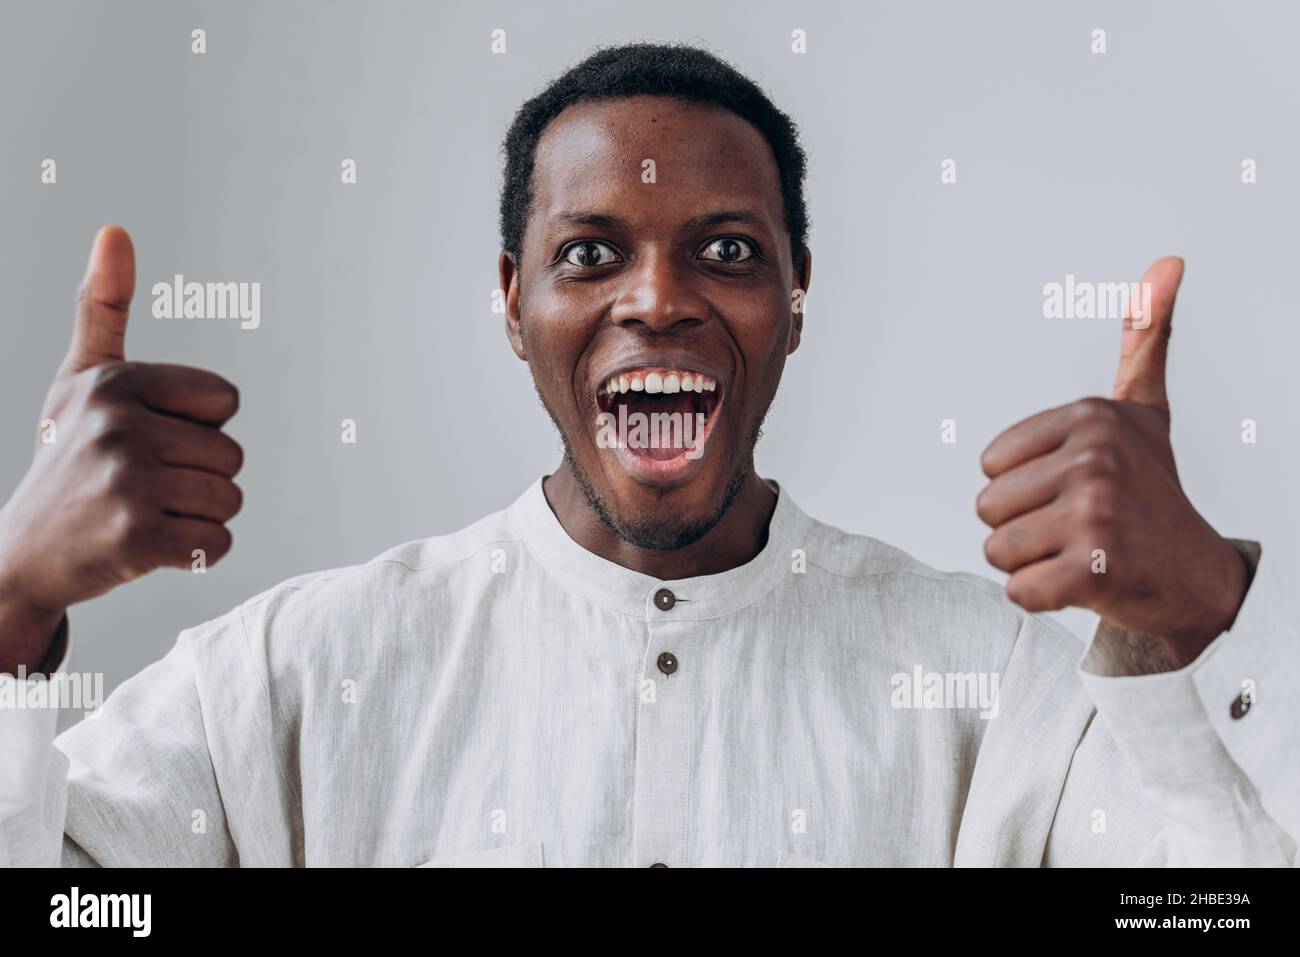 Ritratto di emozionale felice africano-americano ragazzo in camicia bianca mostrando i pollici in posa su sfondo grigio chiaro vista ravvicinata Foto Stock